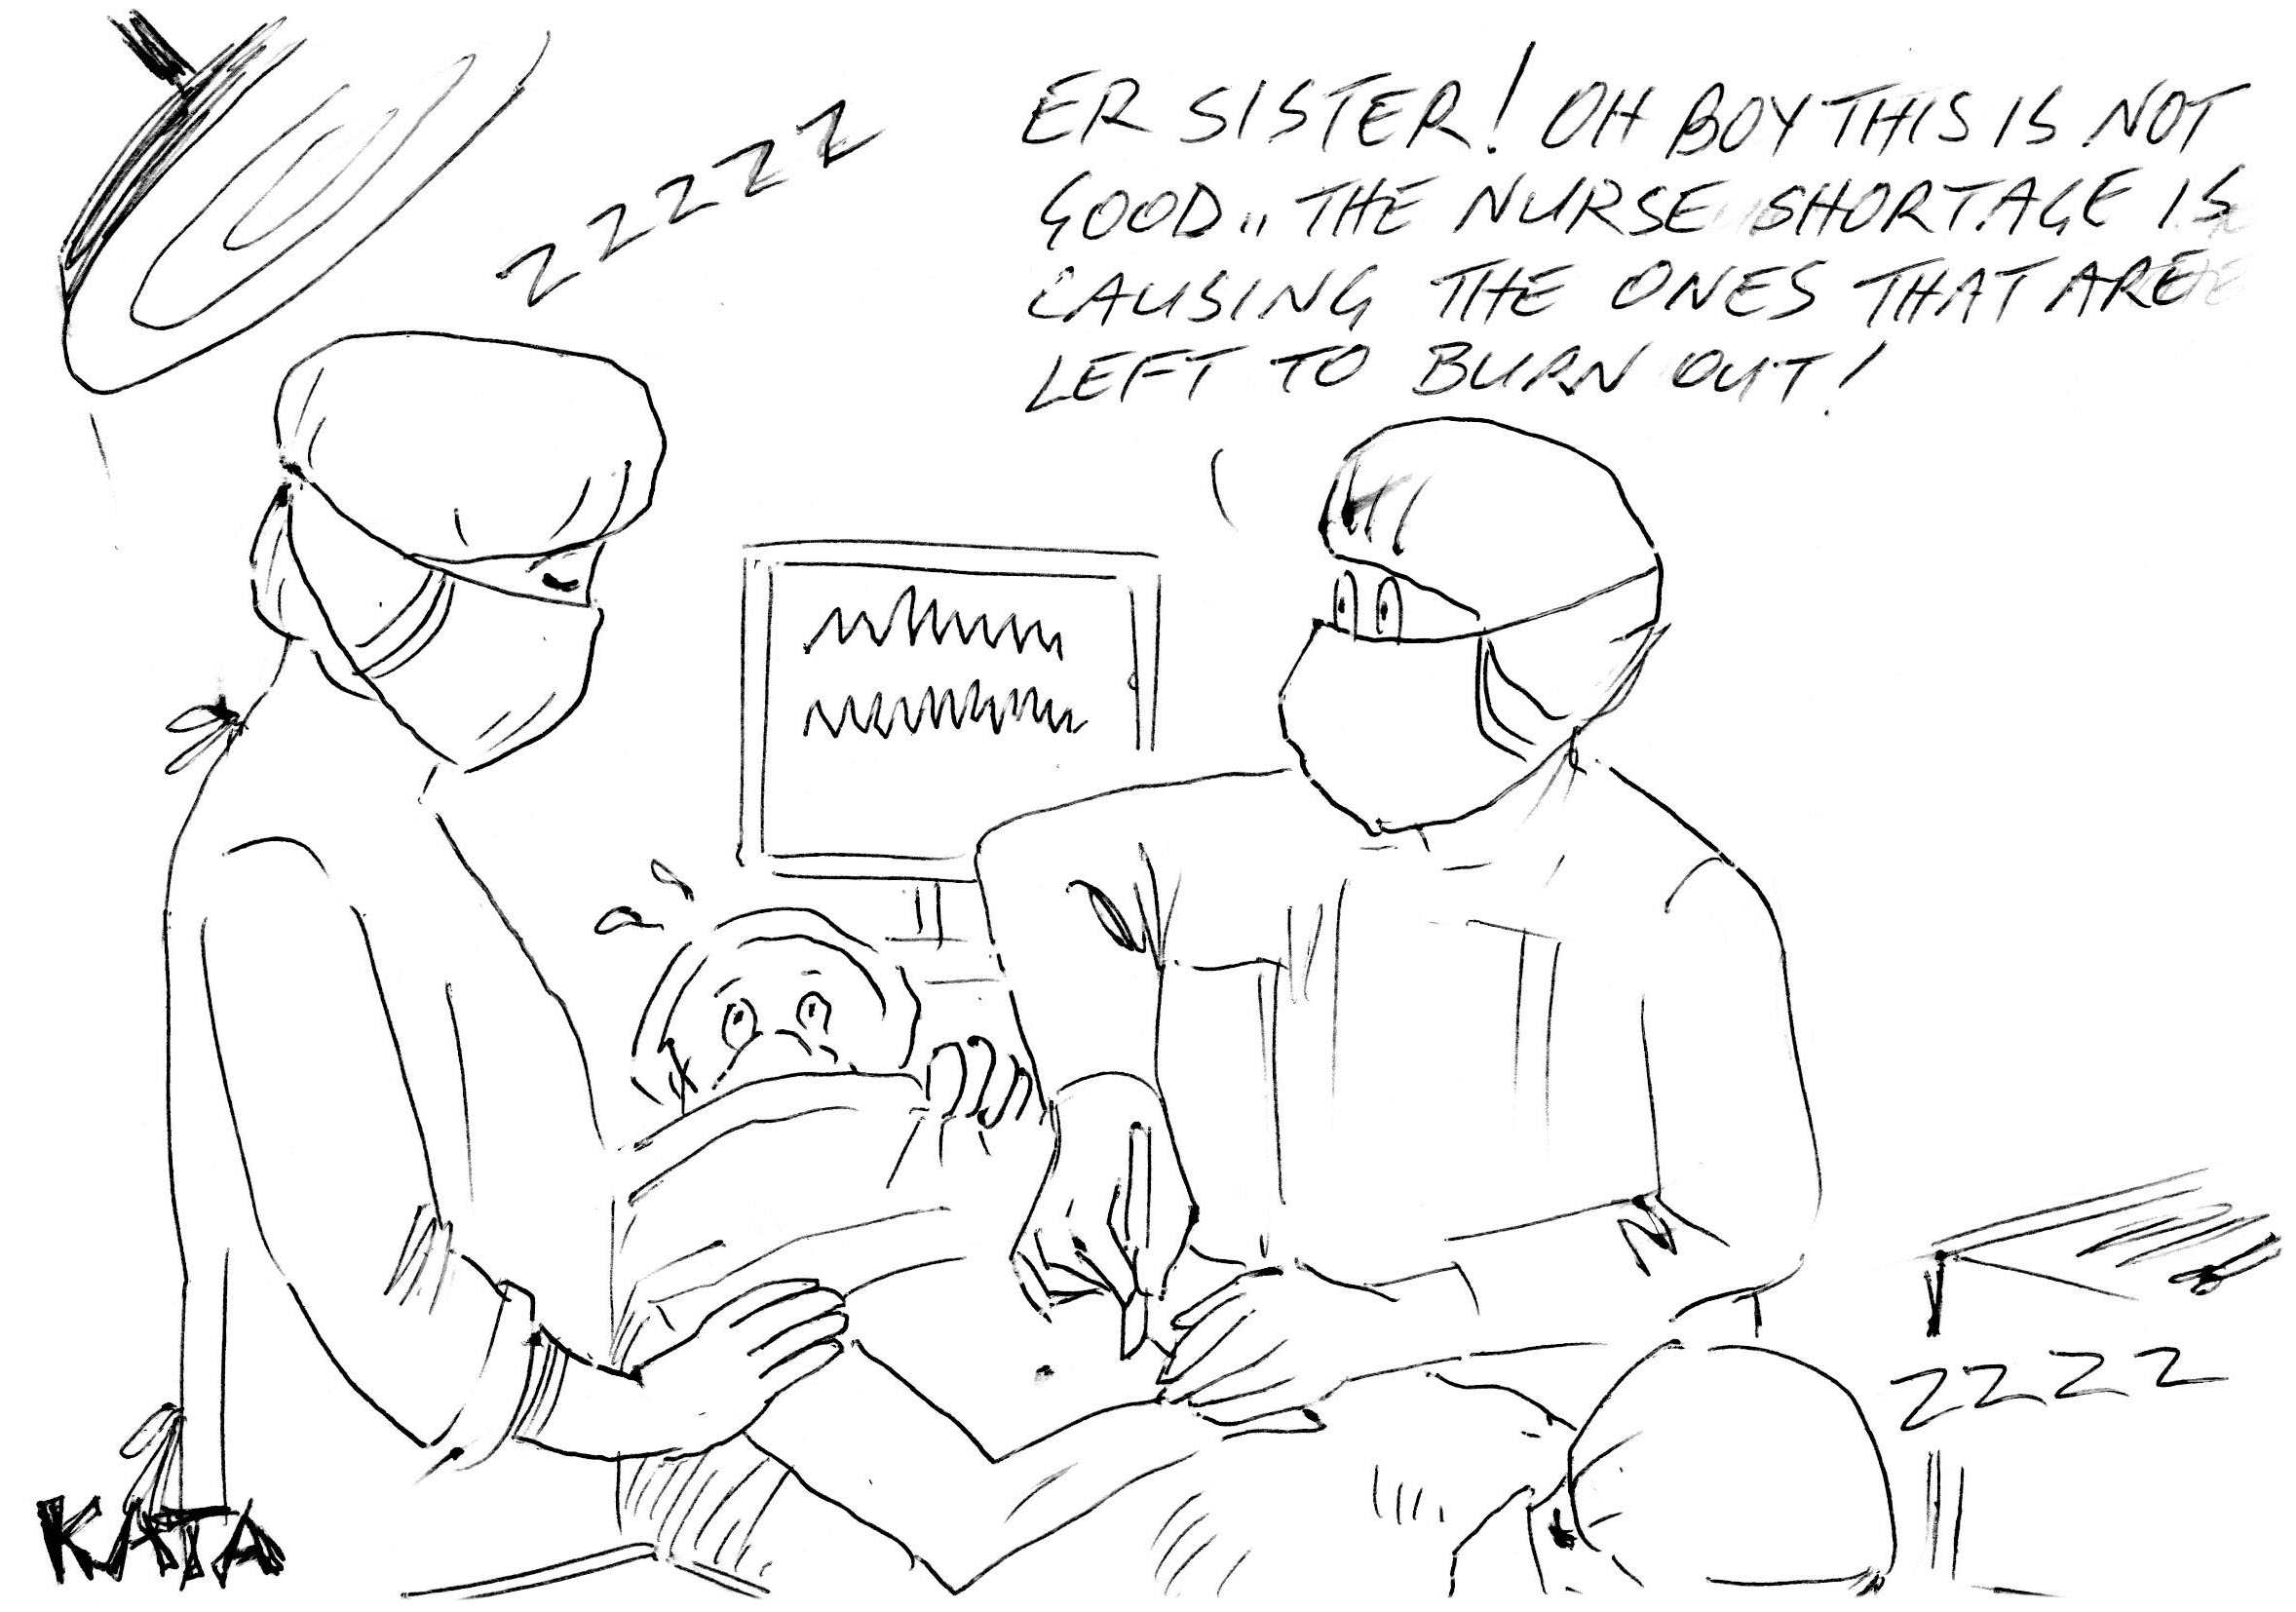 Kata: Nurse Shortage